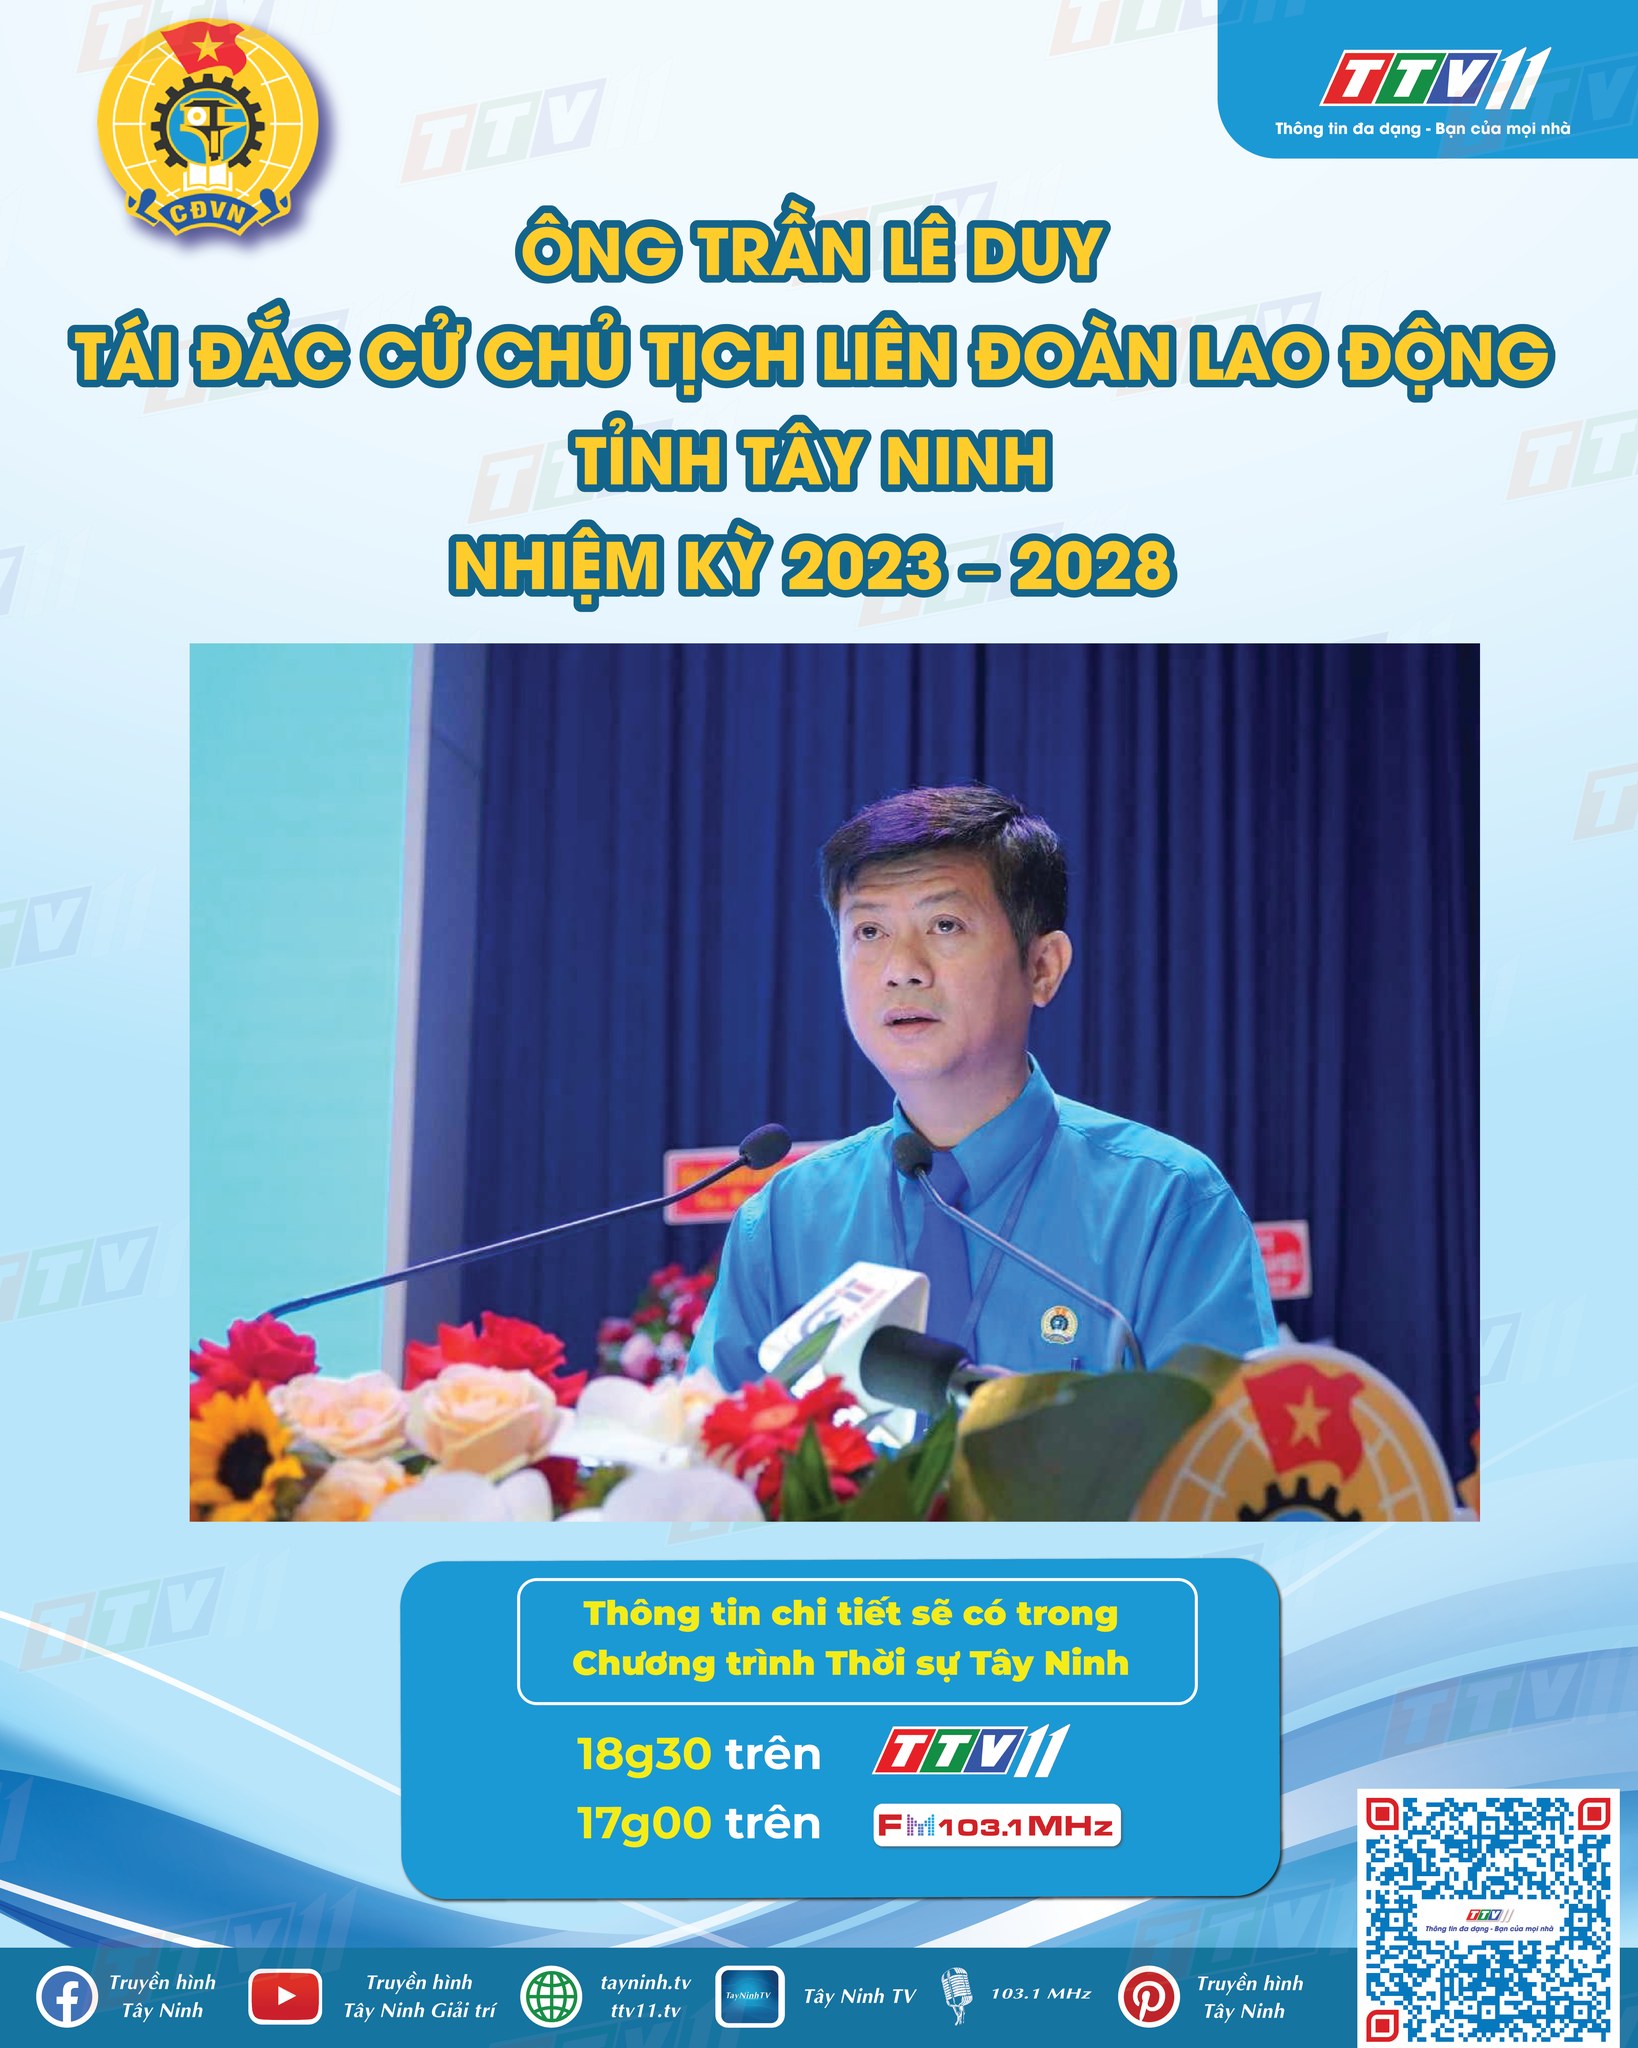 Chúc mừng Ông Trần Lê Duy – Ủy viên Ban Chấp hành Tổng Liên đoàn Lao động Việt Nam